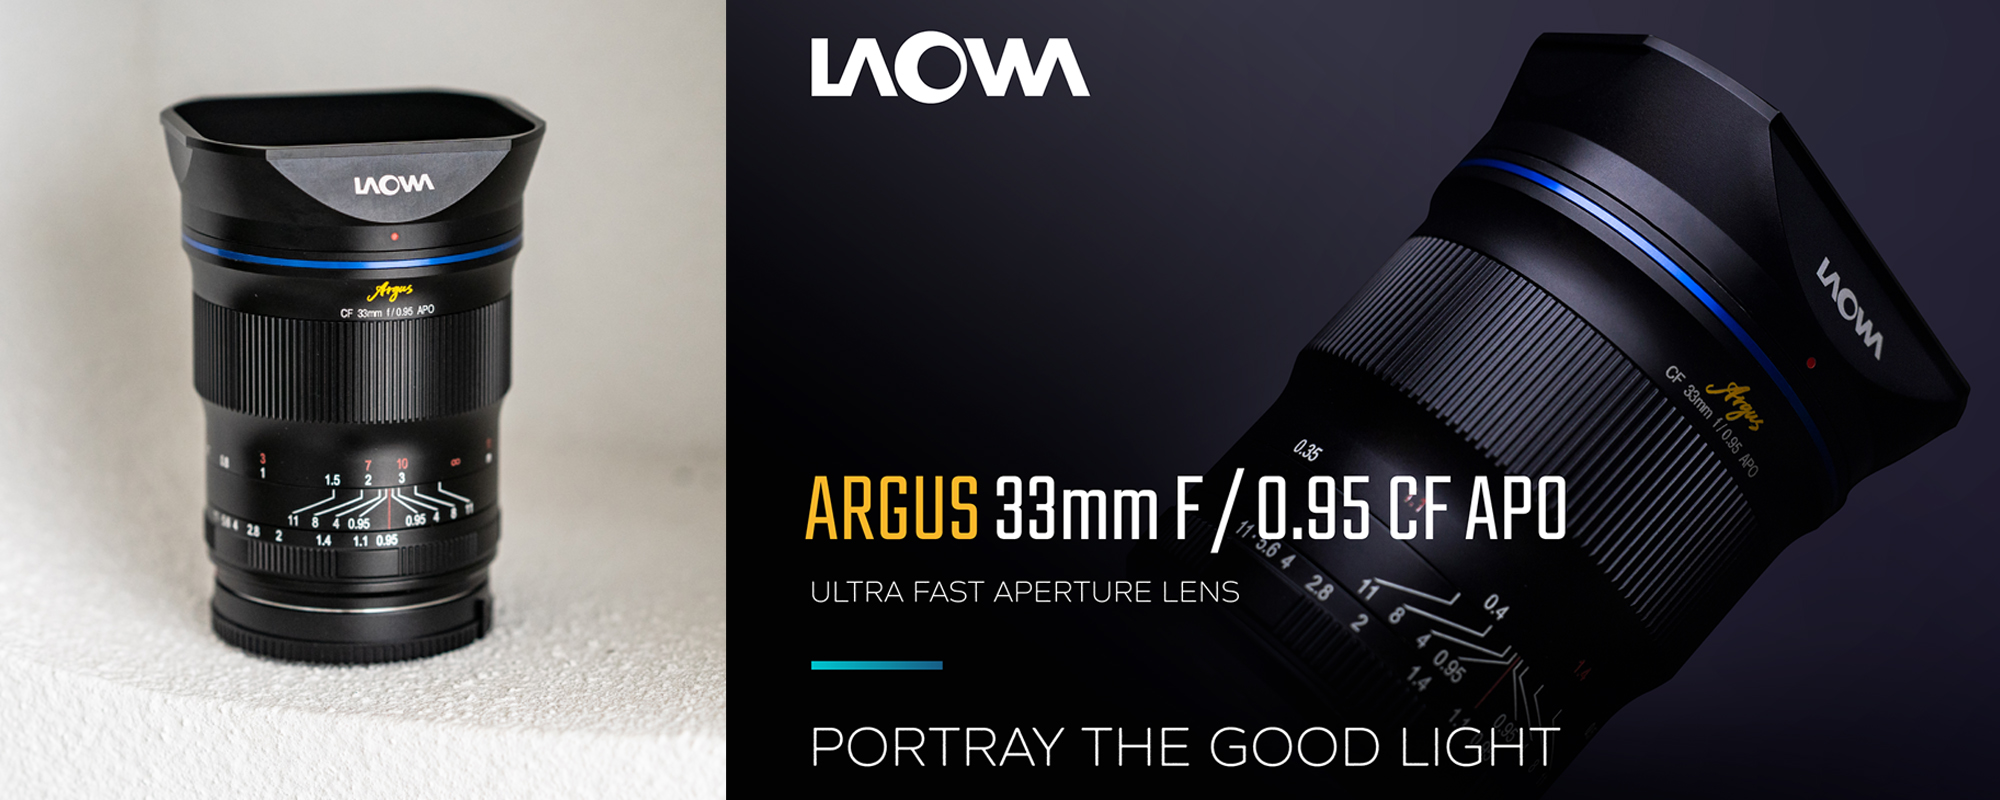 Venus Optics Argus 33mm f/0.95 APO CF lens for Fuji X